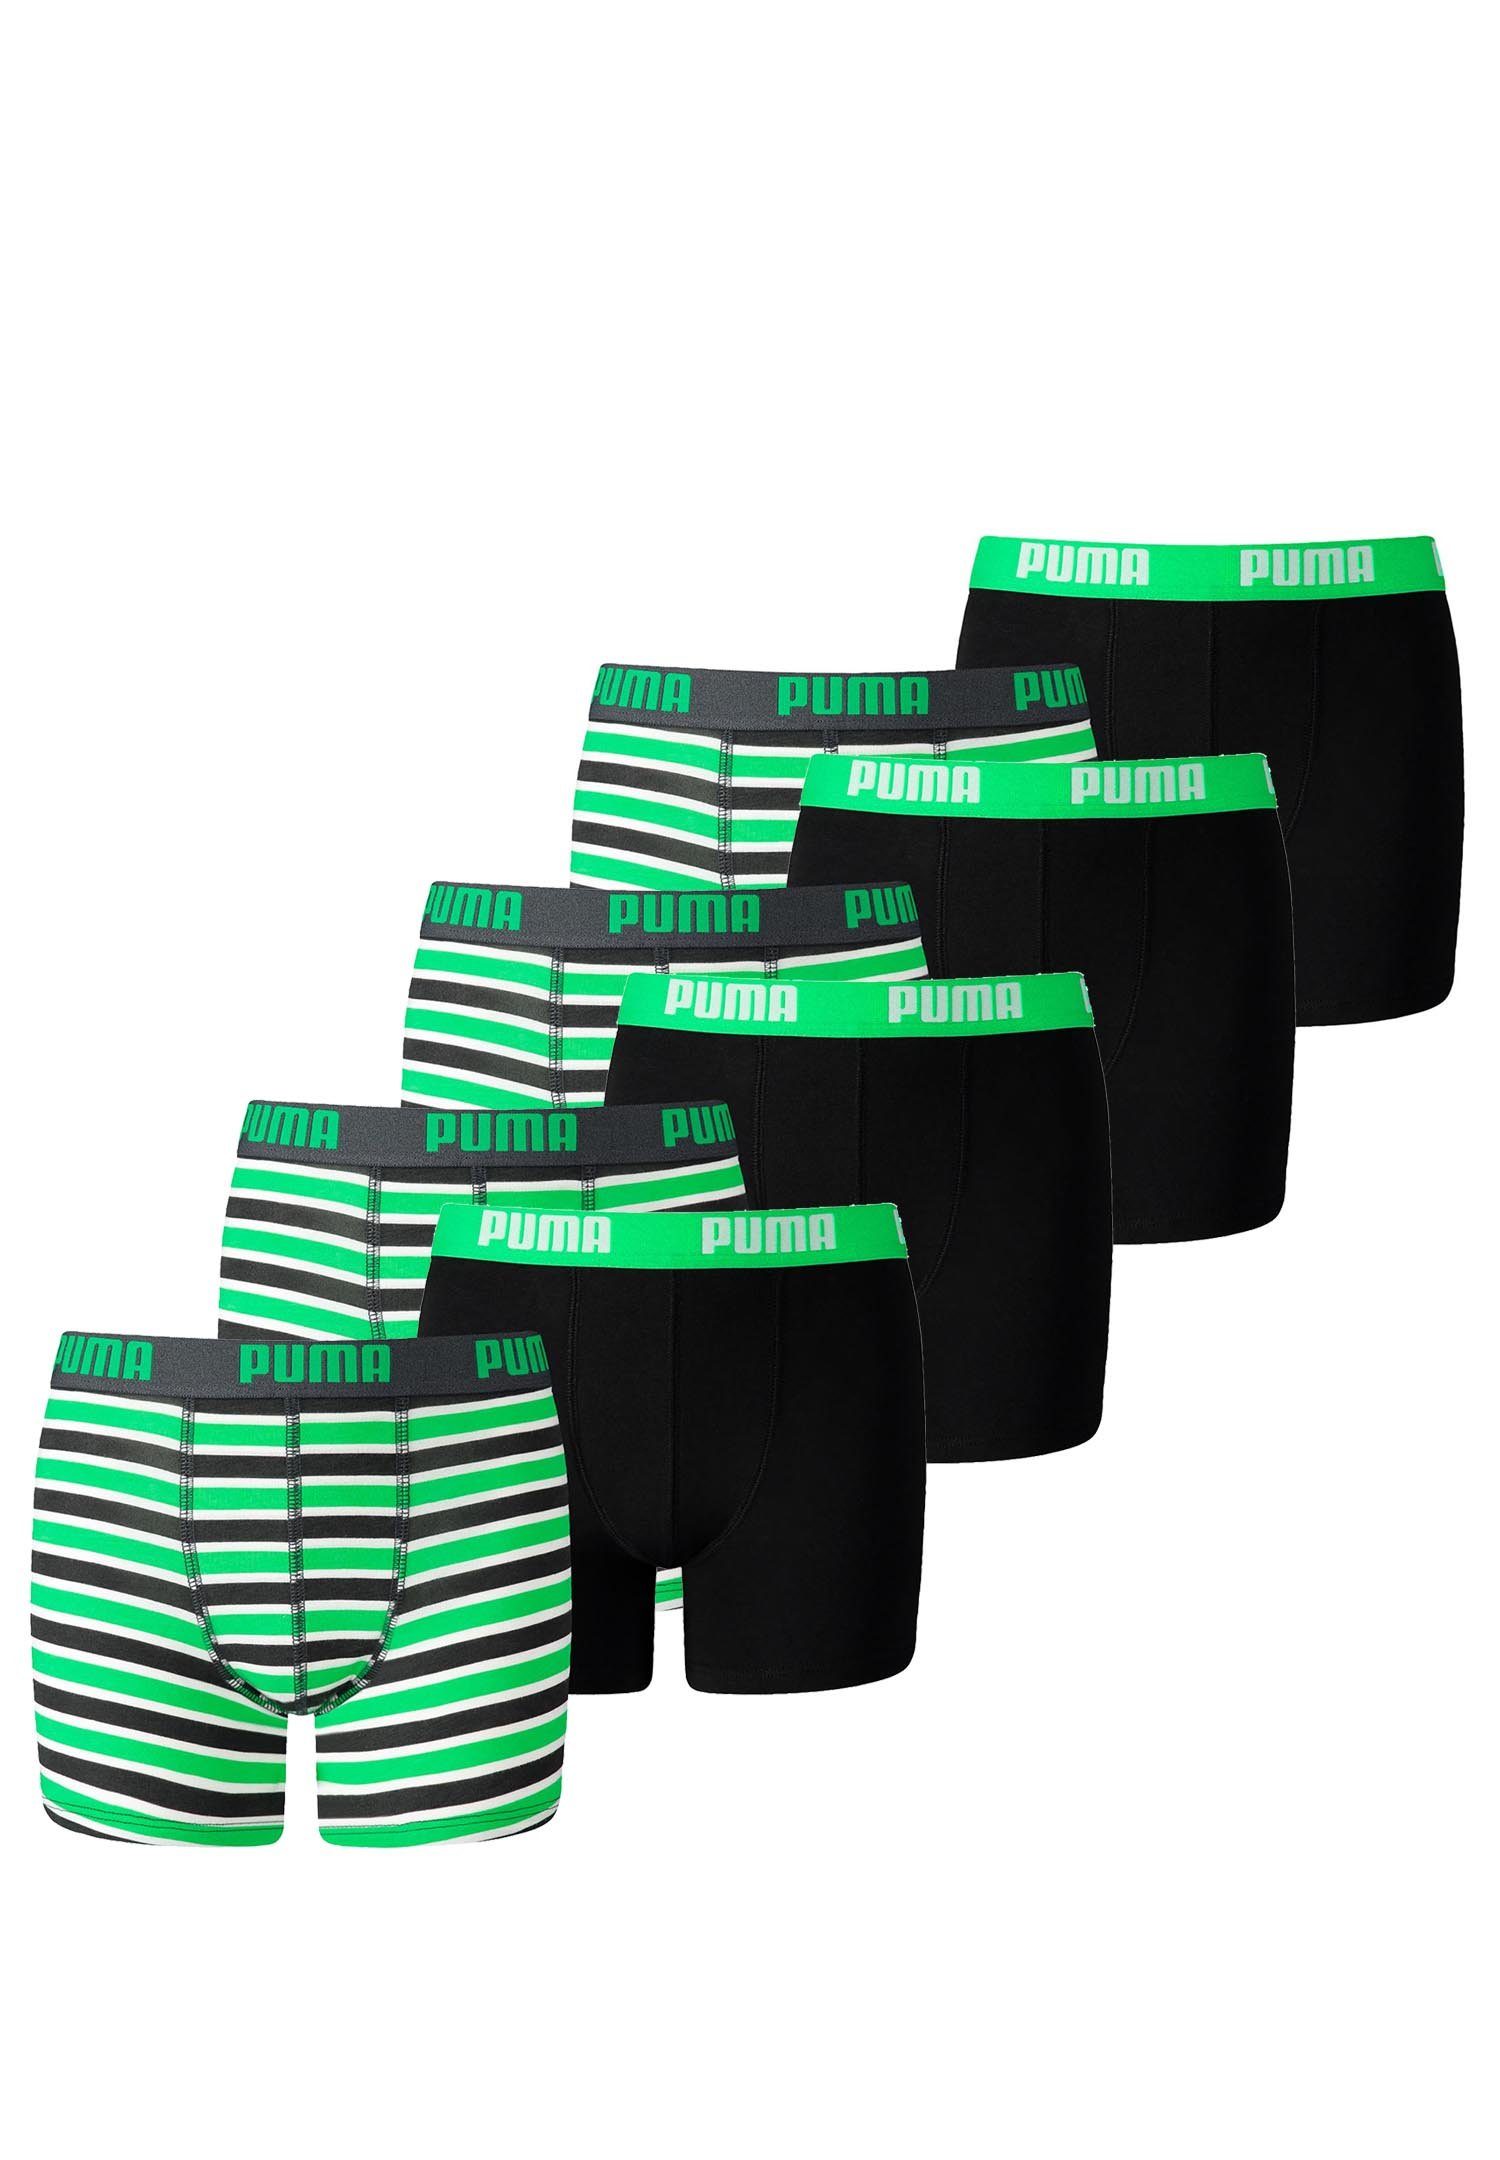 PUMA Boxershorts JUNGEN BASIC BOXER Printed Stripes 8er Pack (8er-Pack)